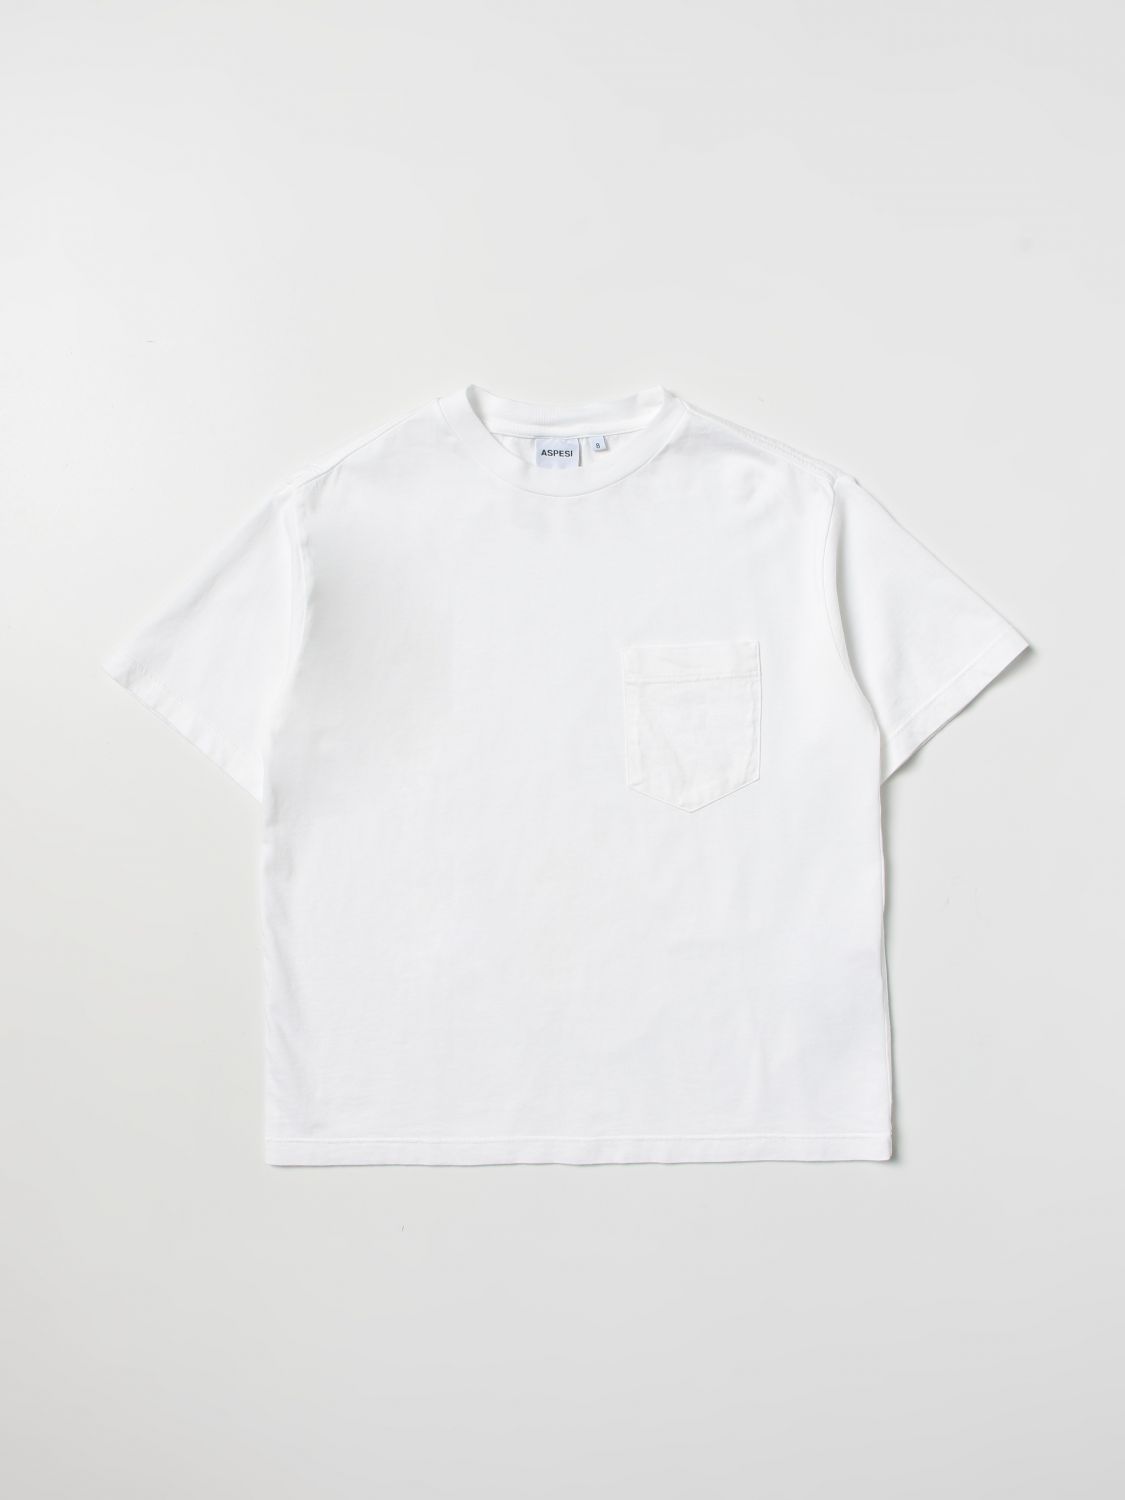 Aspesi T-shirt  Kids Colour White